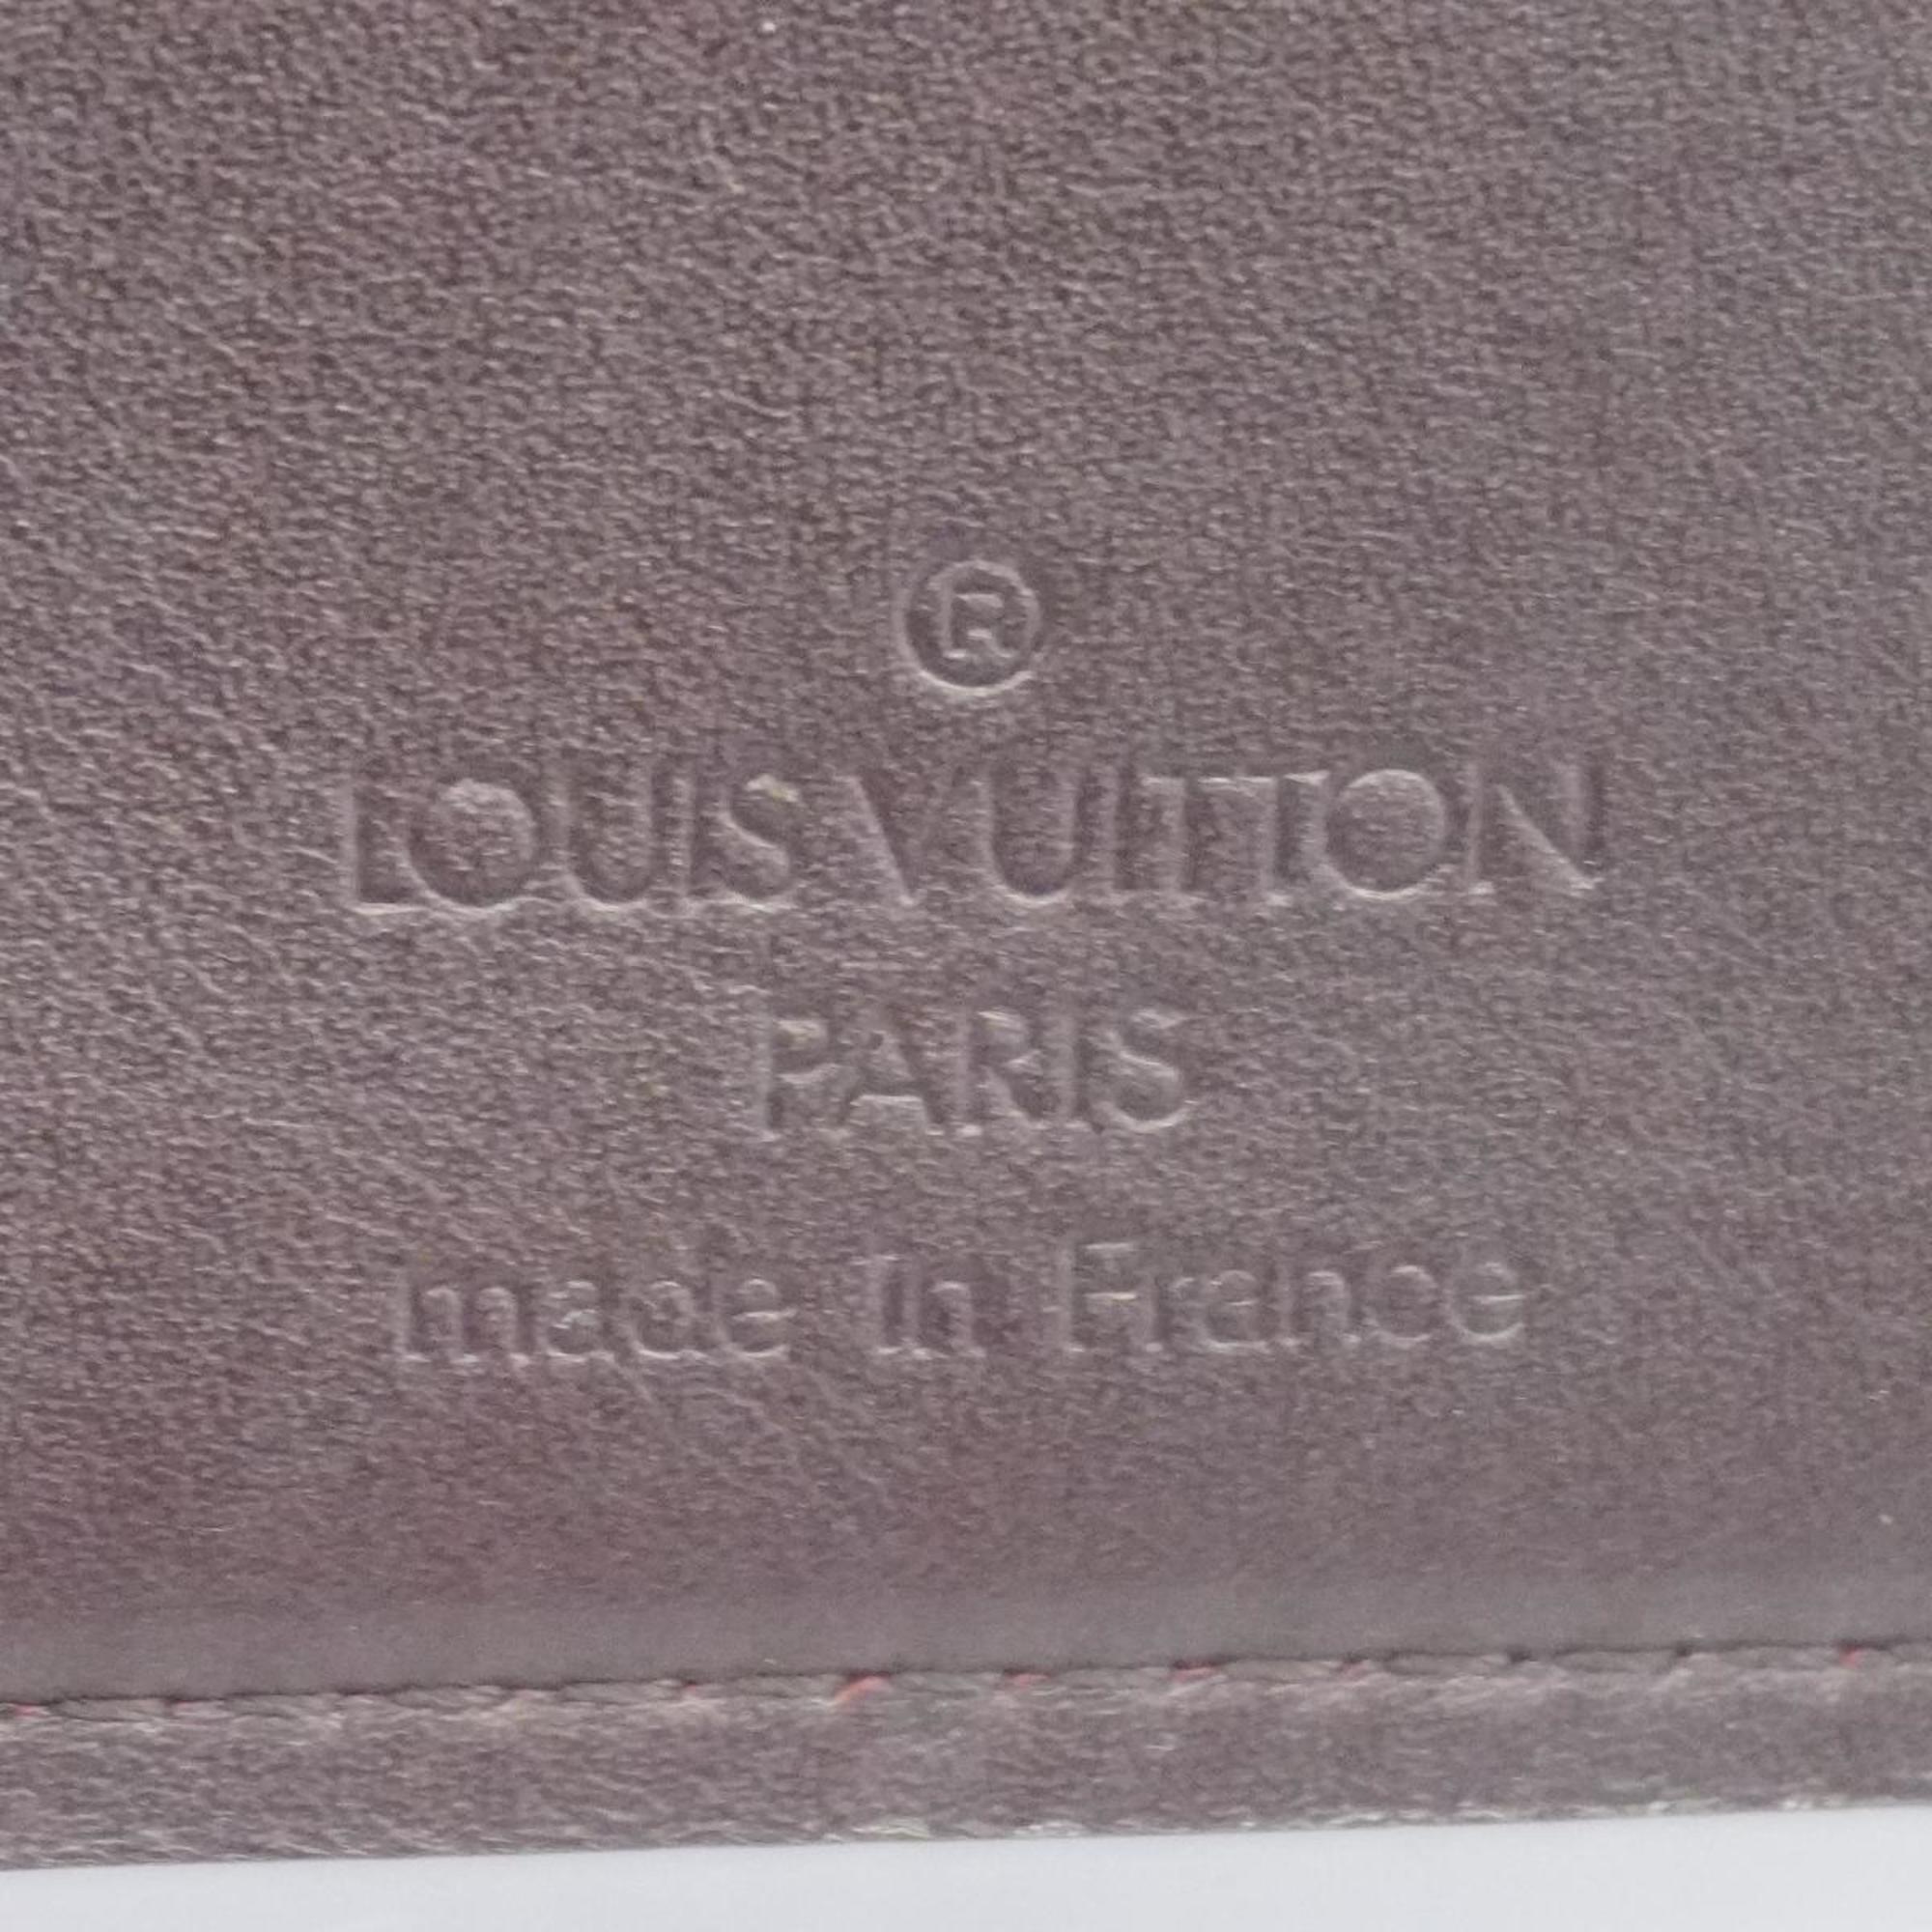 Louis Vuitton Wallet Vernis Portefeuille Viennois M93521 Amarante Ladies